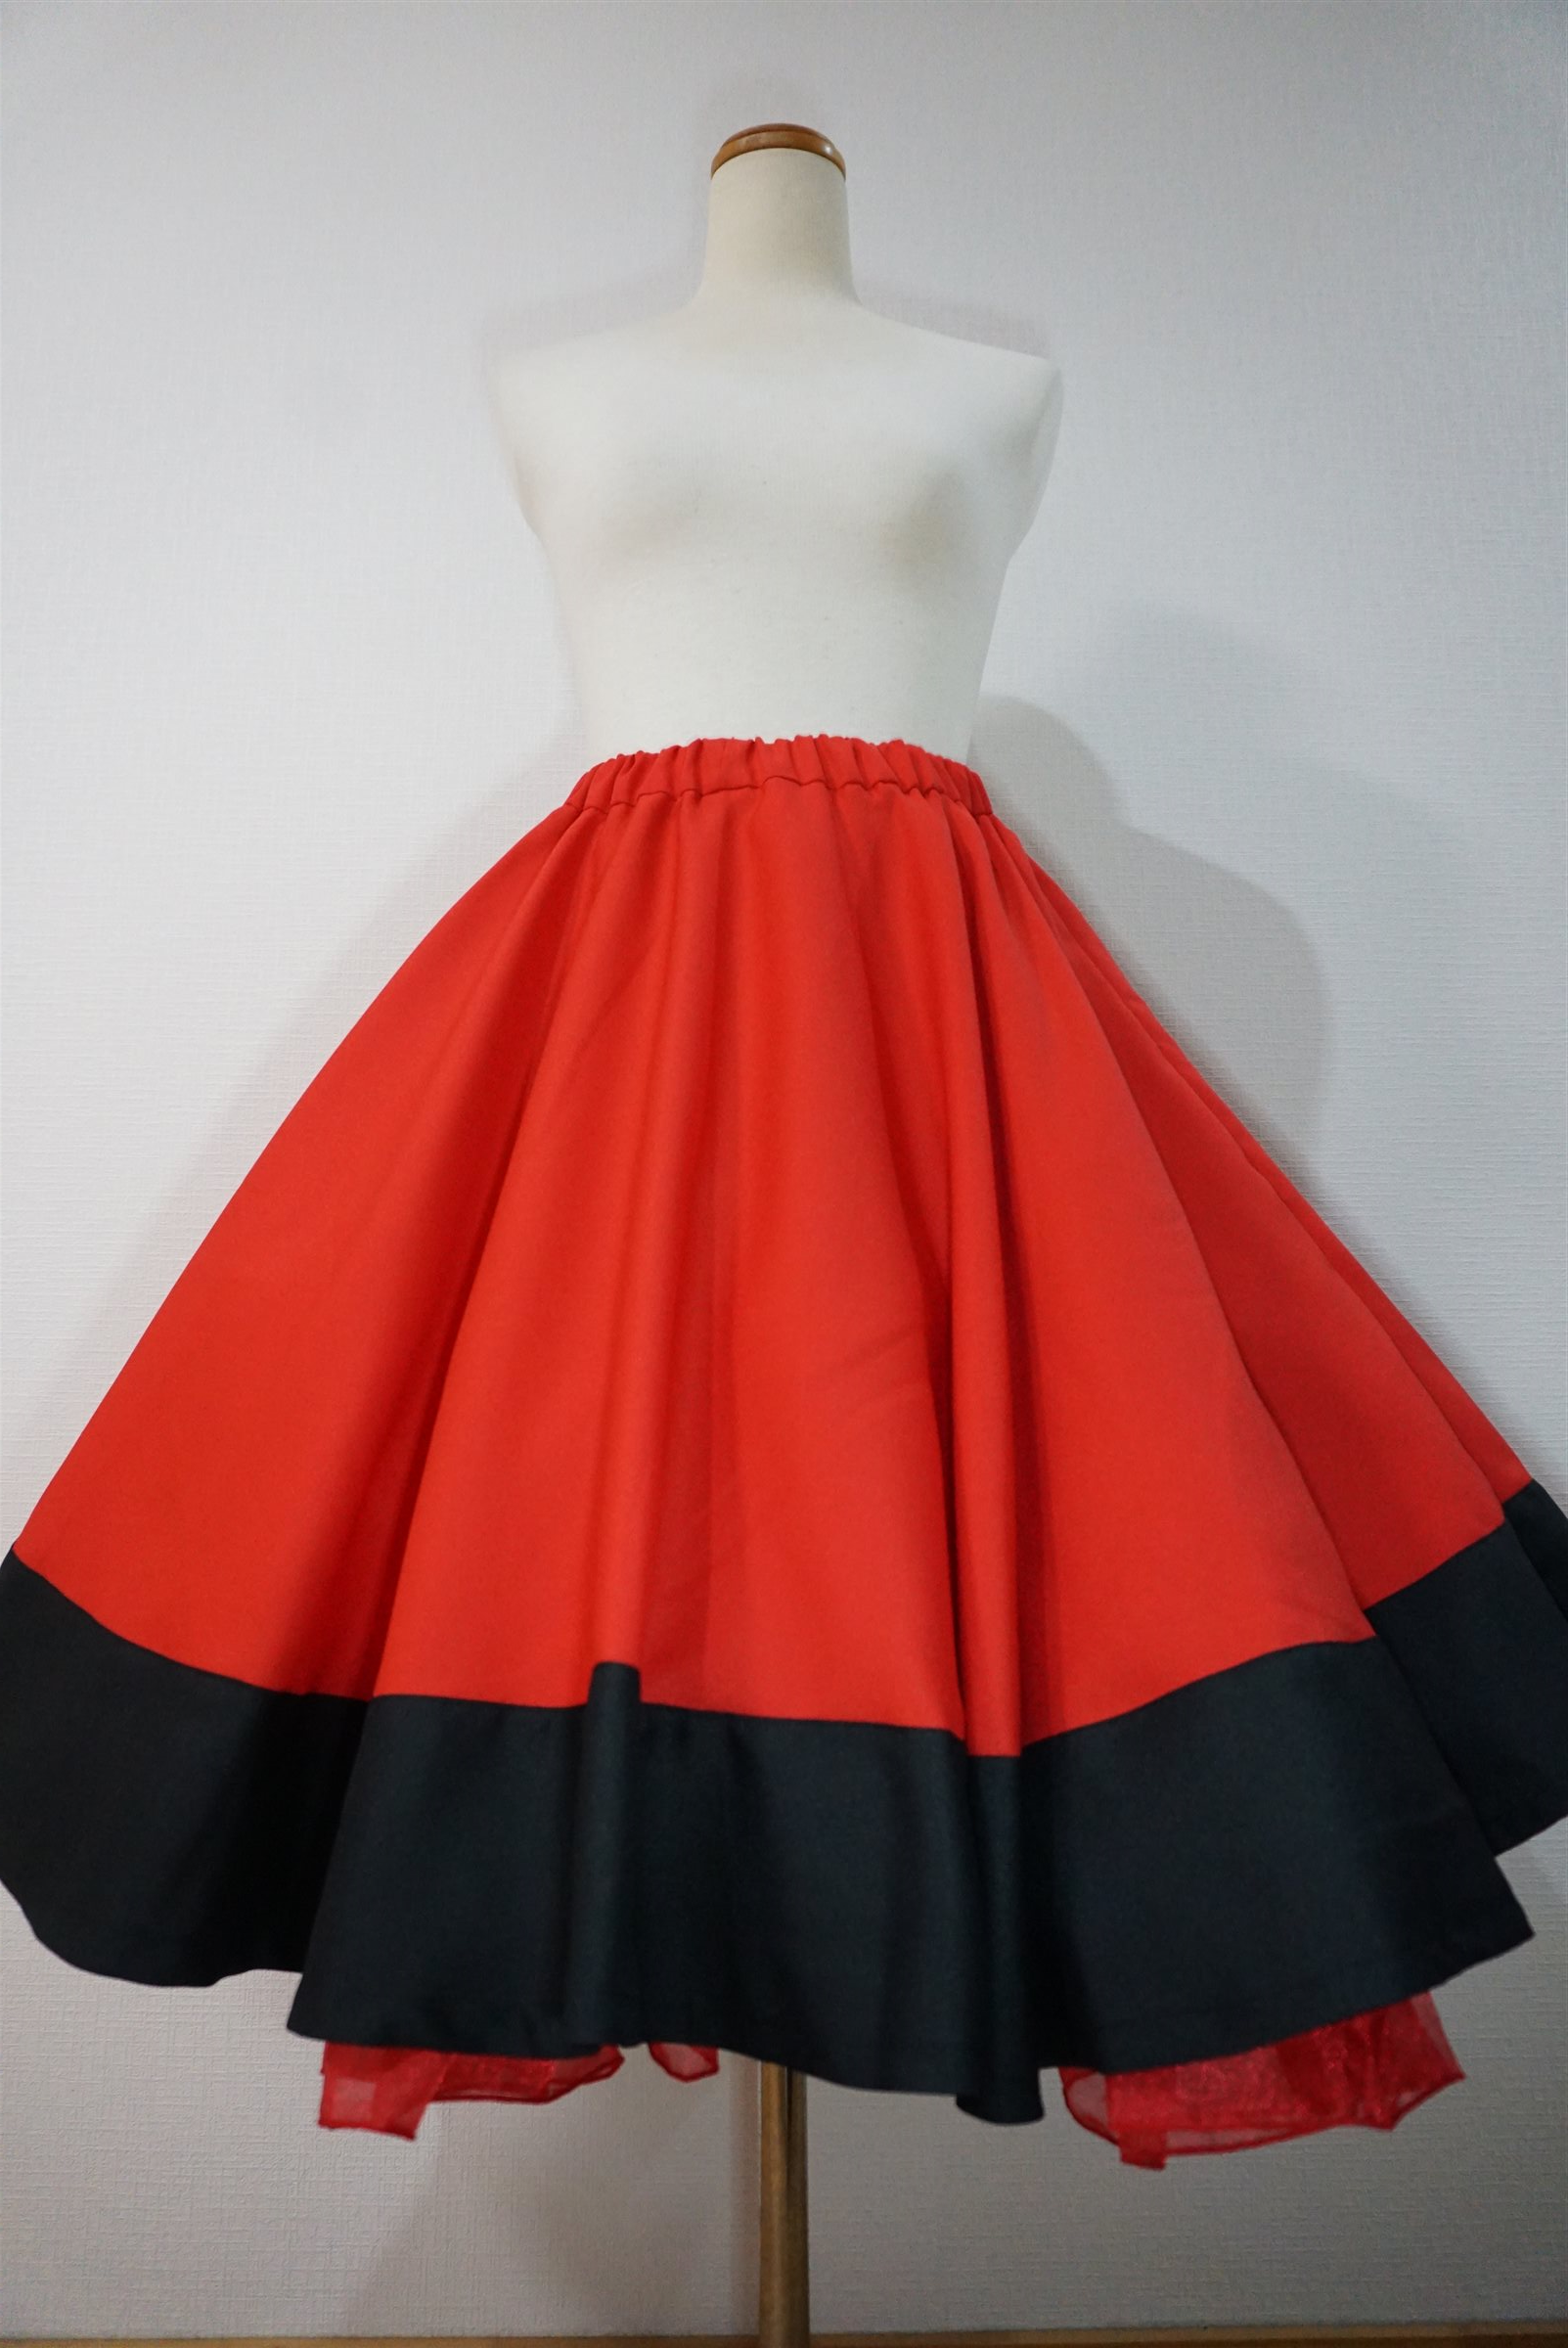 Circular skirt Amundsen red black